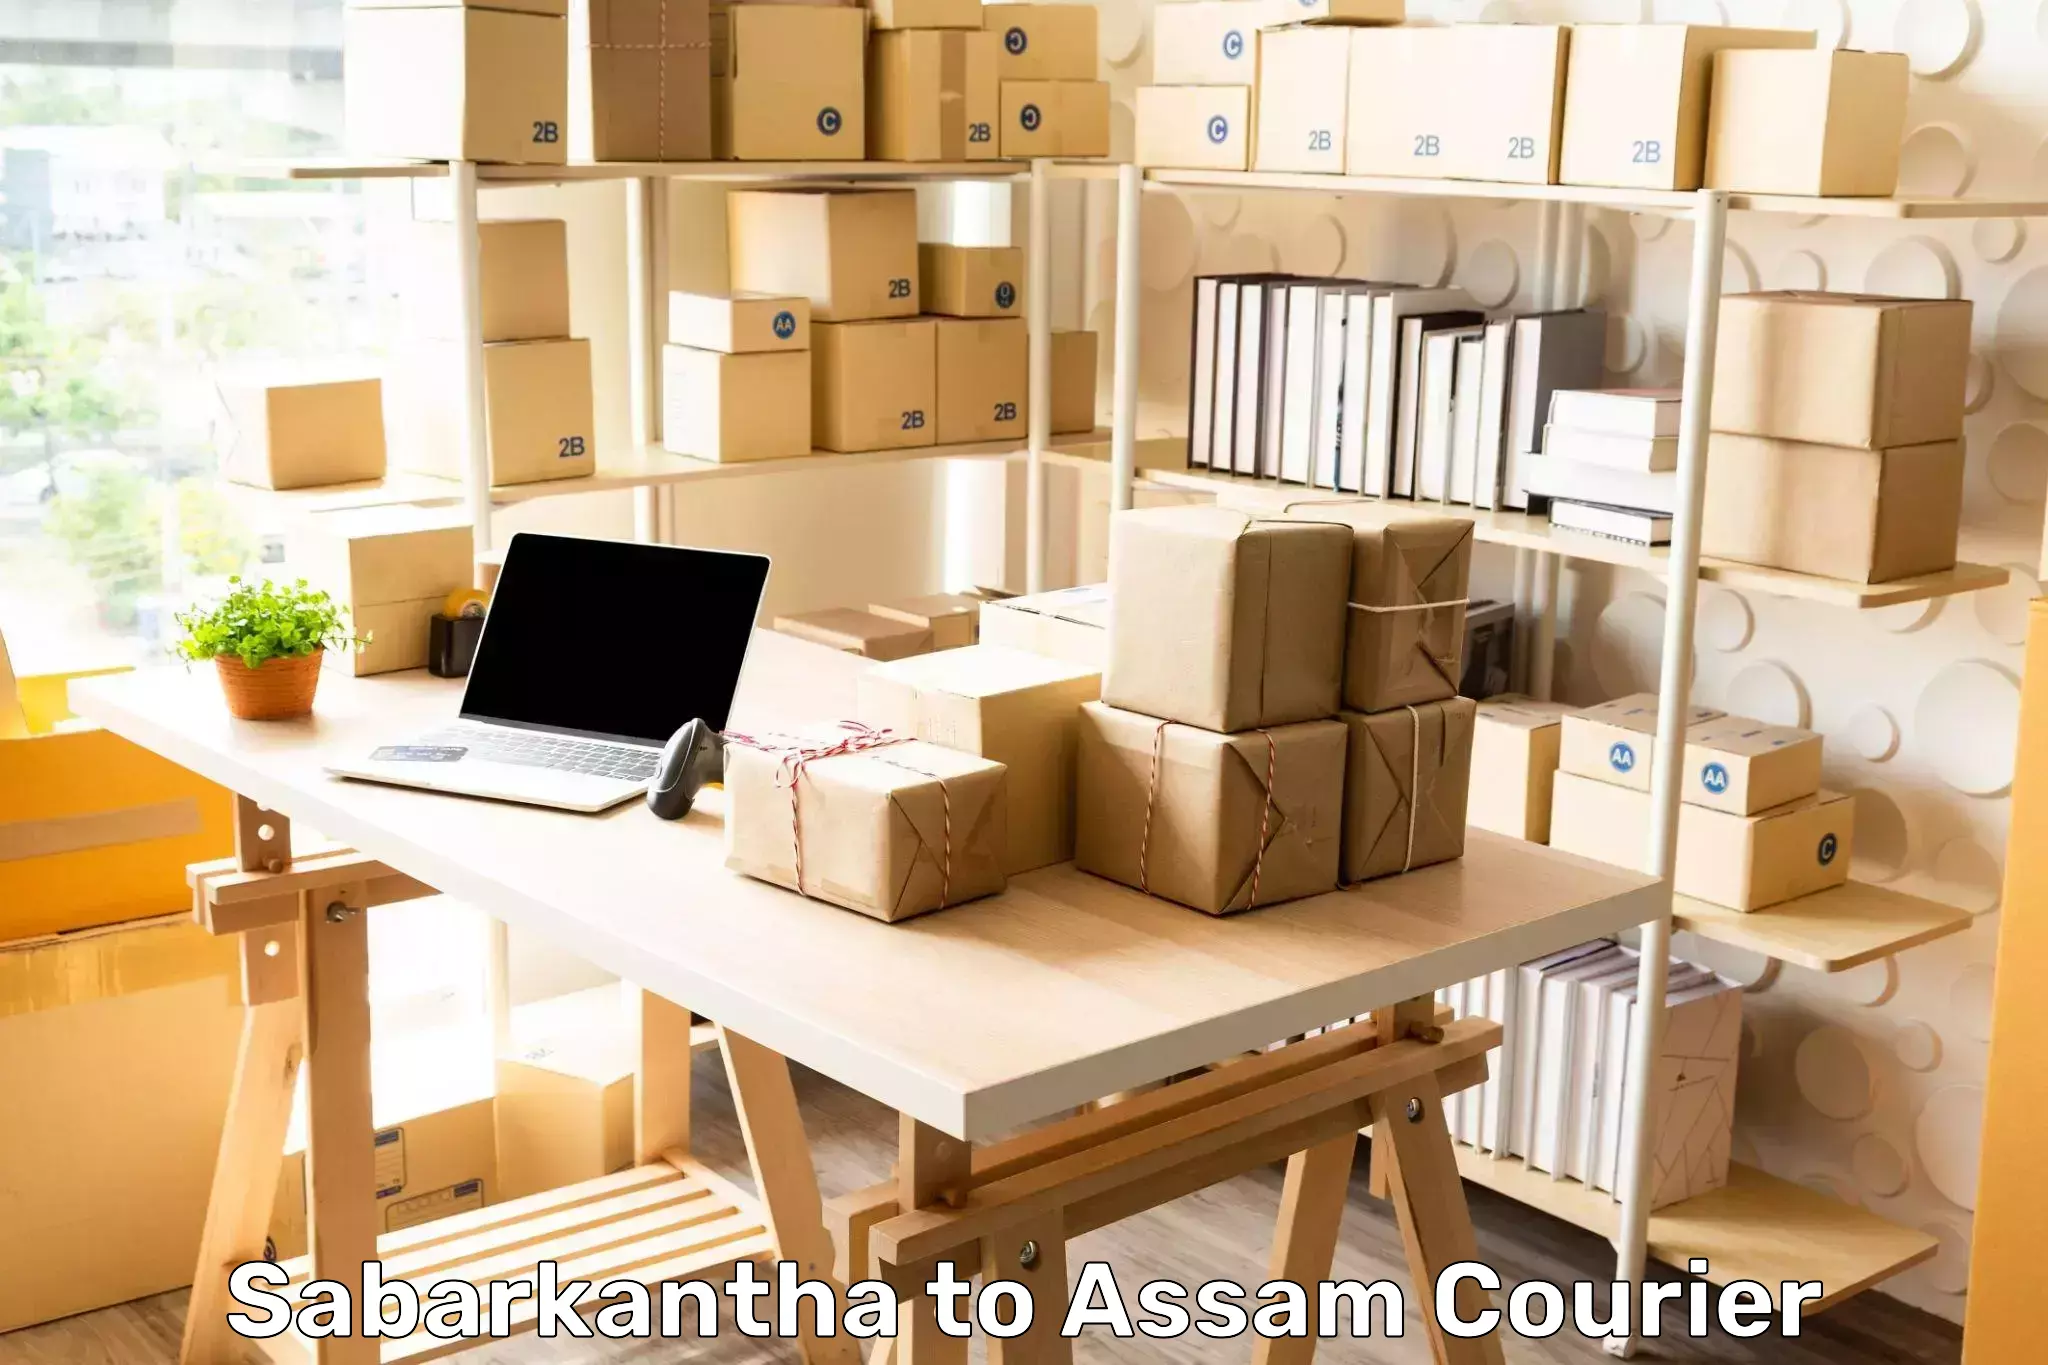 Doorstep delivery service in Sabarkantha to Assam